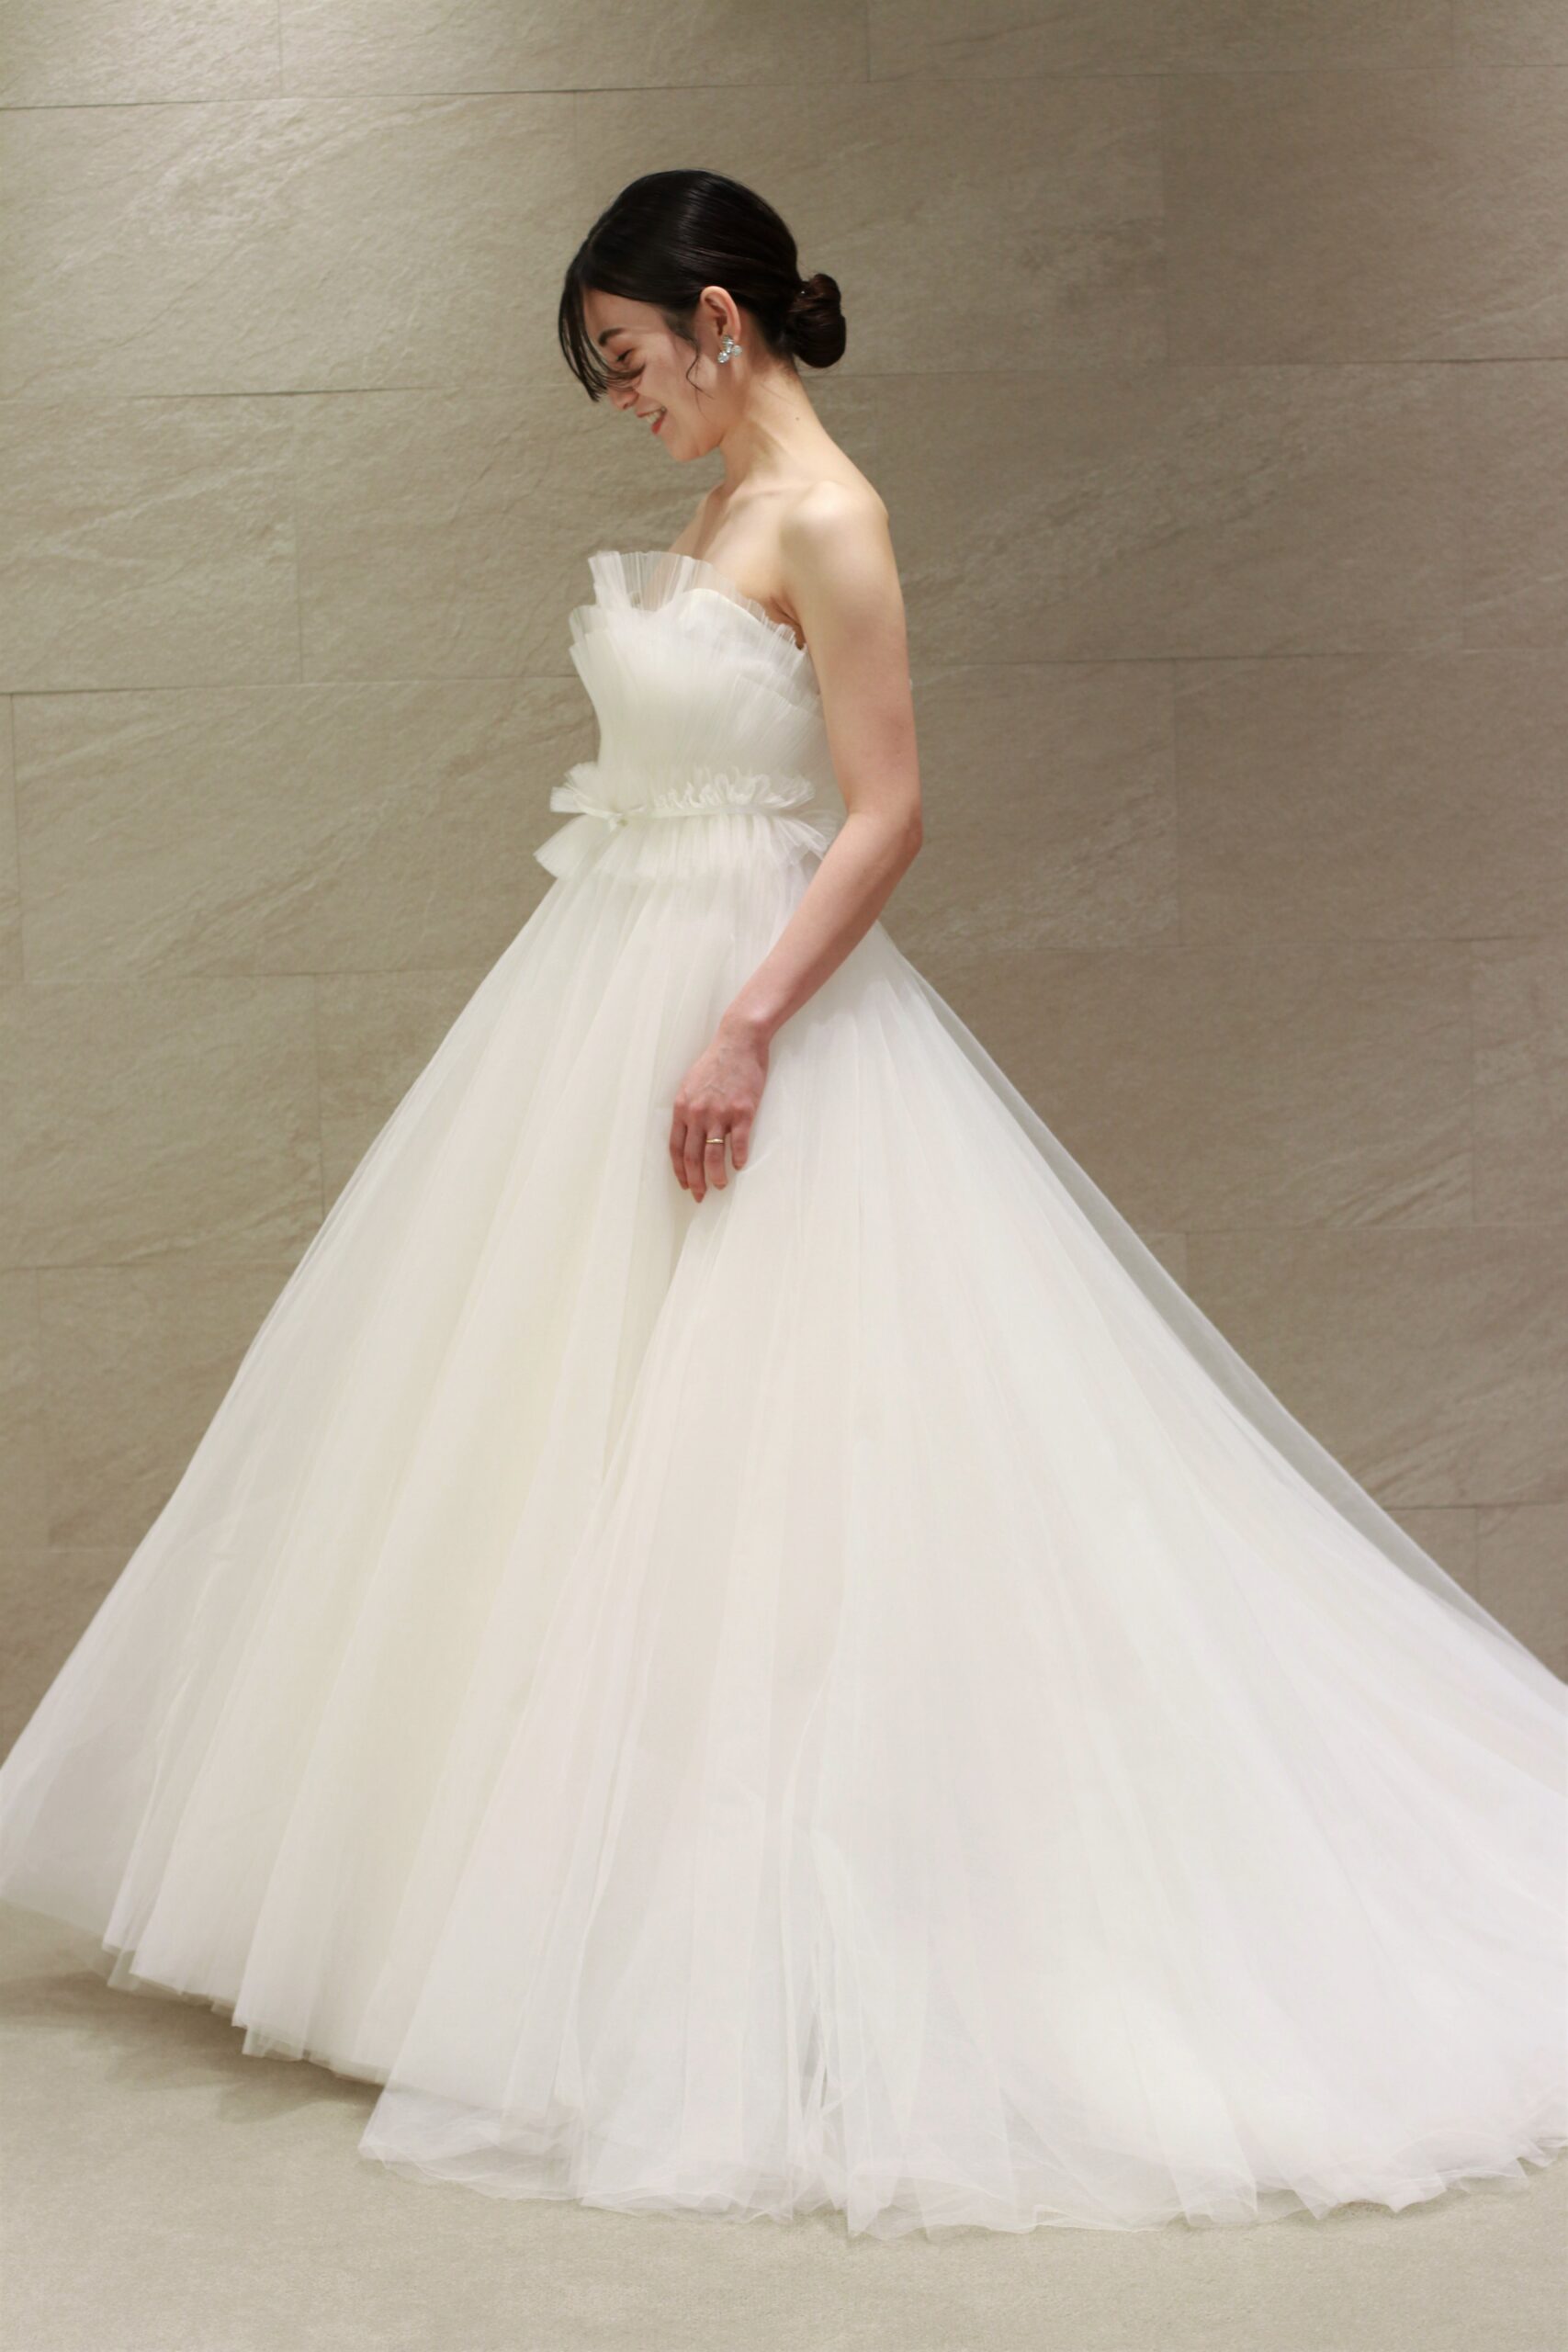 ザトリートドレッシングアディション店の花嫁に人気のアムサーラの新作ウェディングドレスは透明感のあるチュールのスカートが軽やかなウェディングドレスです